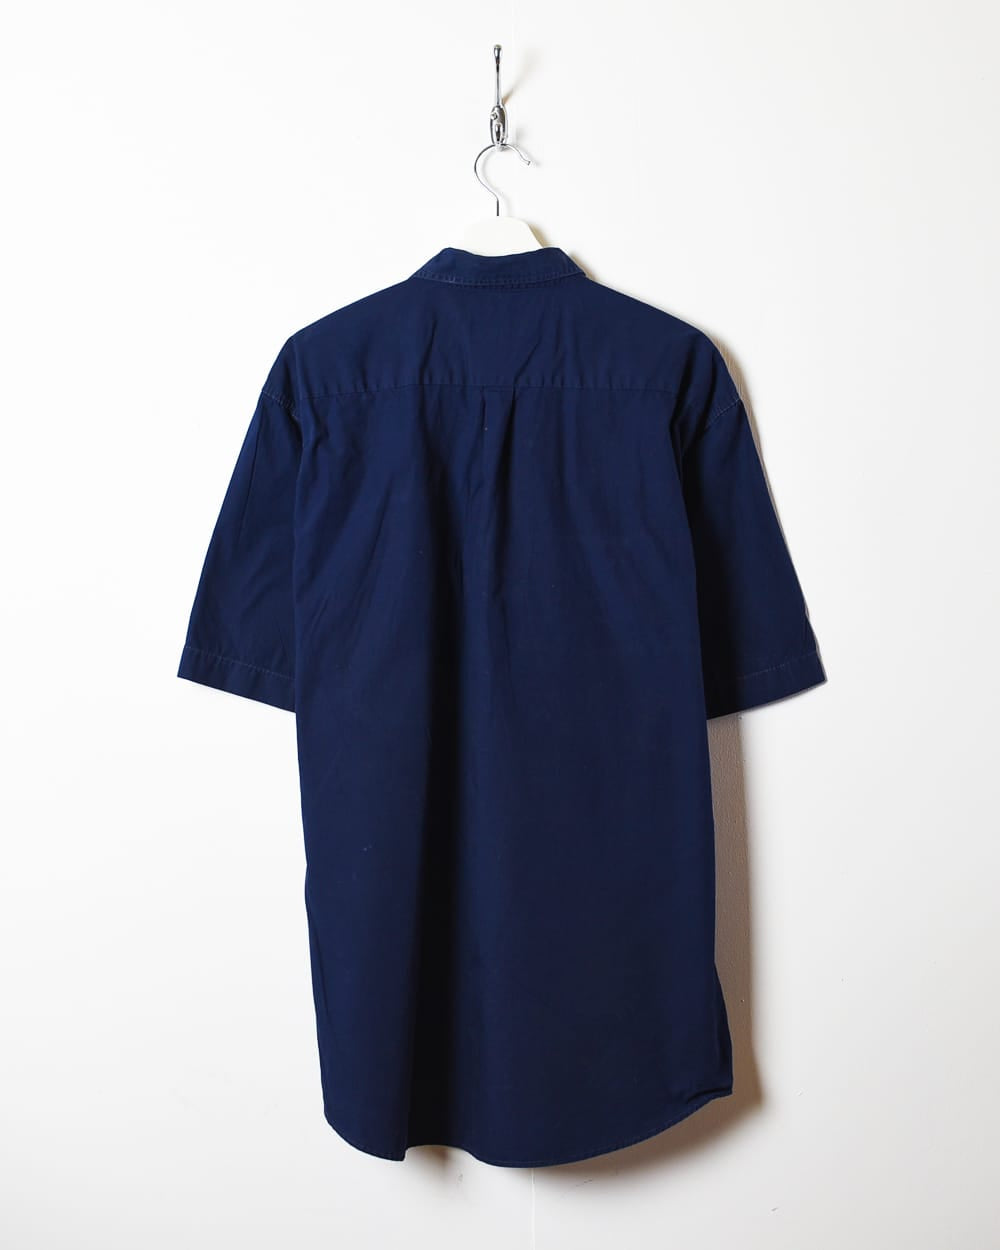 Navy Levi's Short Sleeved Shirt - Medium